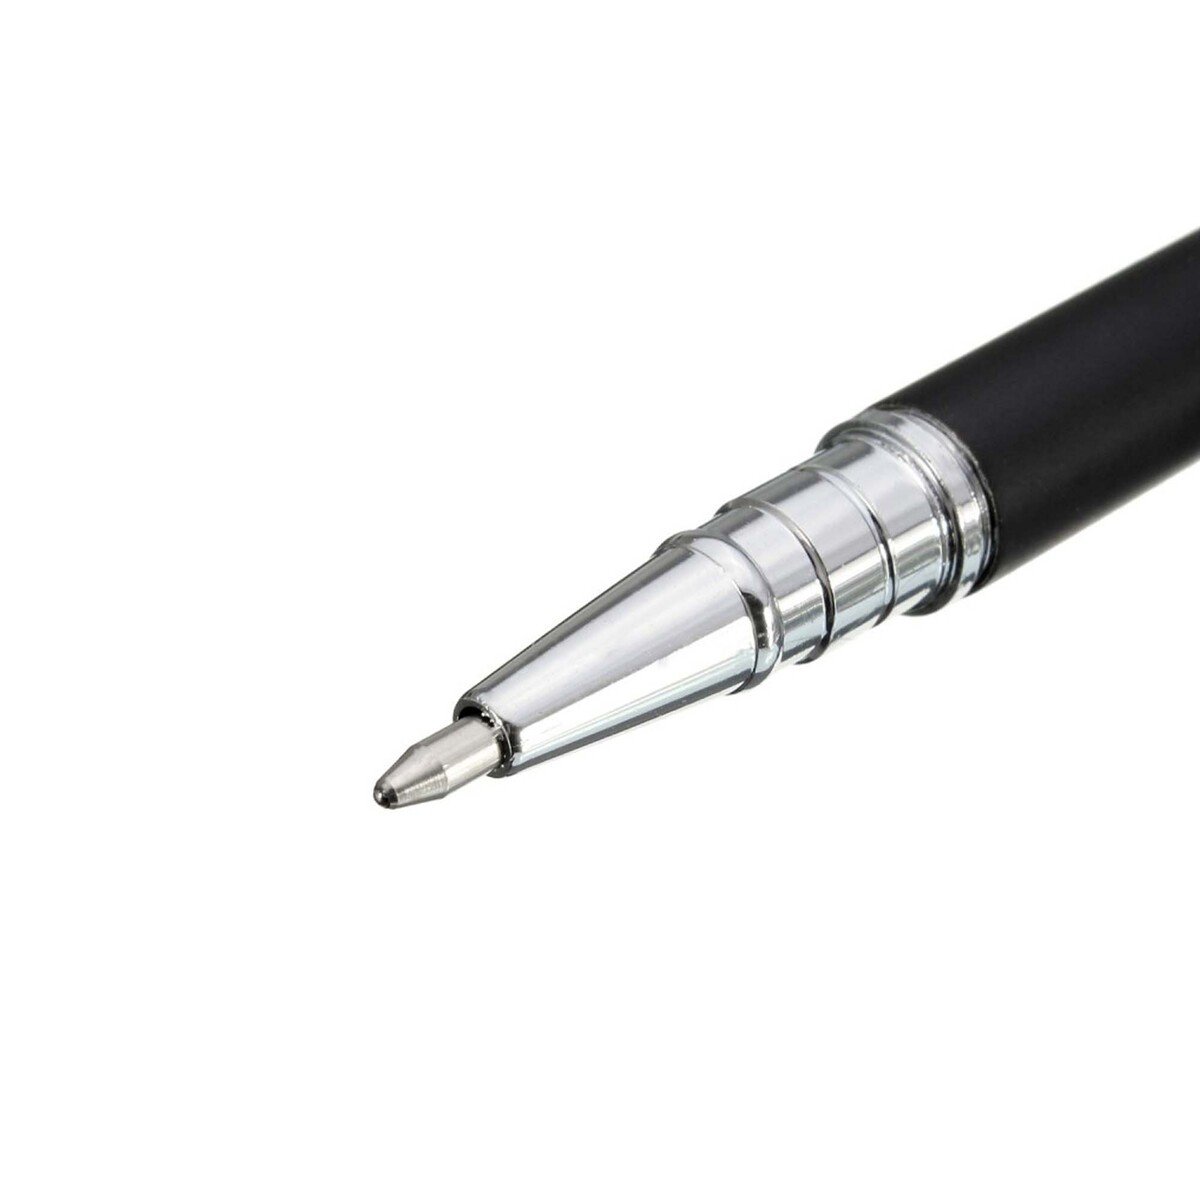 قلم ستايلوس كبير للموبايلات بشاشات اللمس من تراندز  - PN899